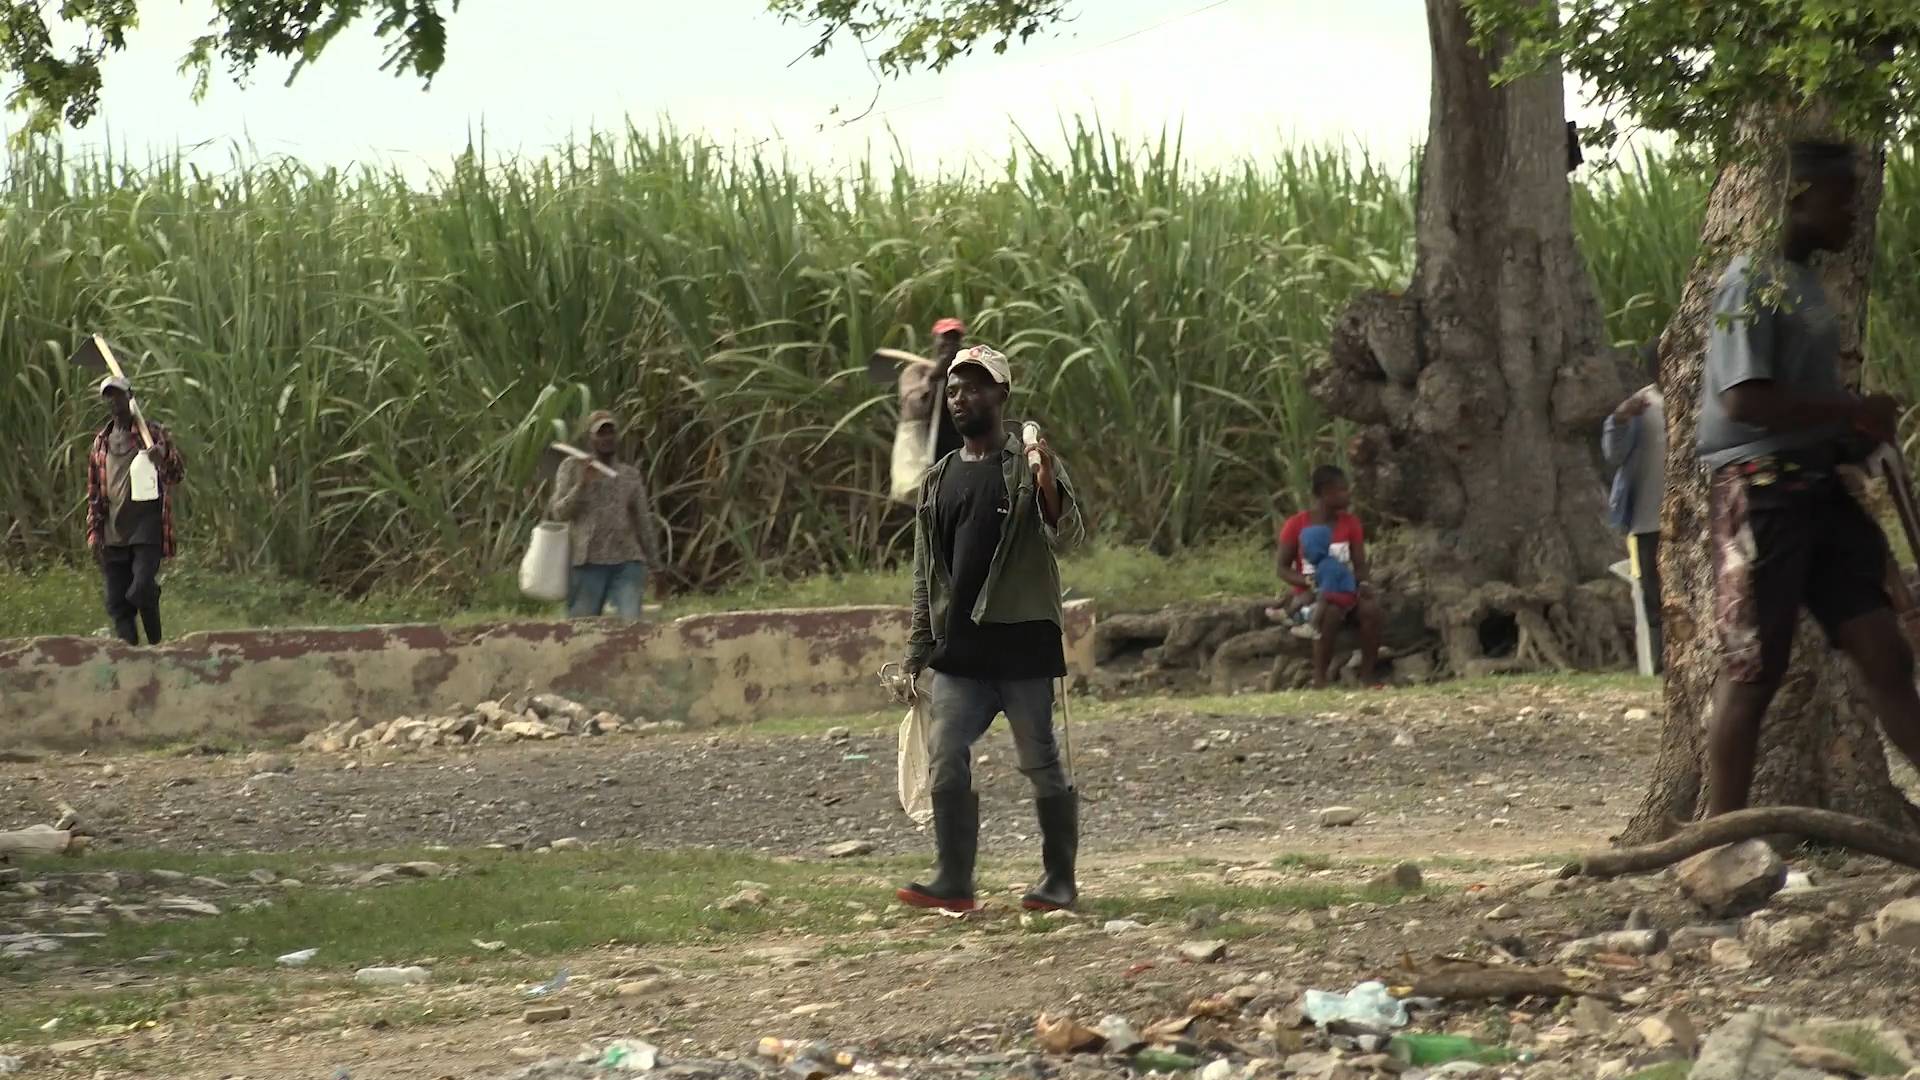 Les Haïtiens travaillent dans des plantations de sucre dans des conditions s'apparentant à du travail forcé